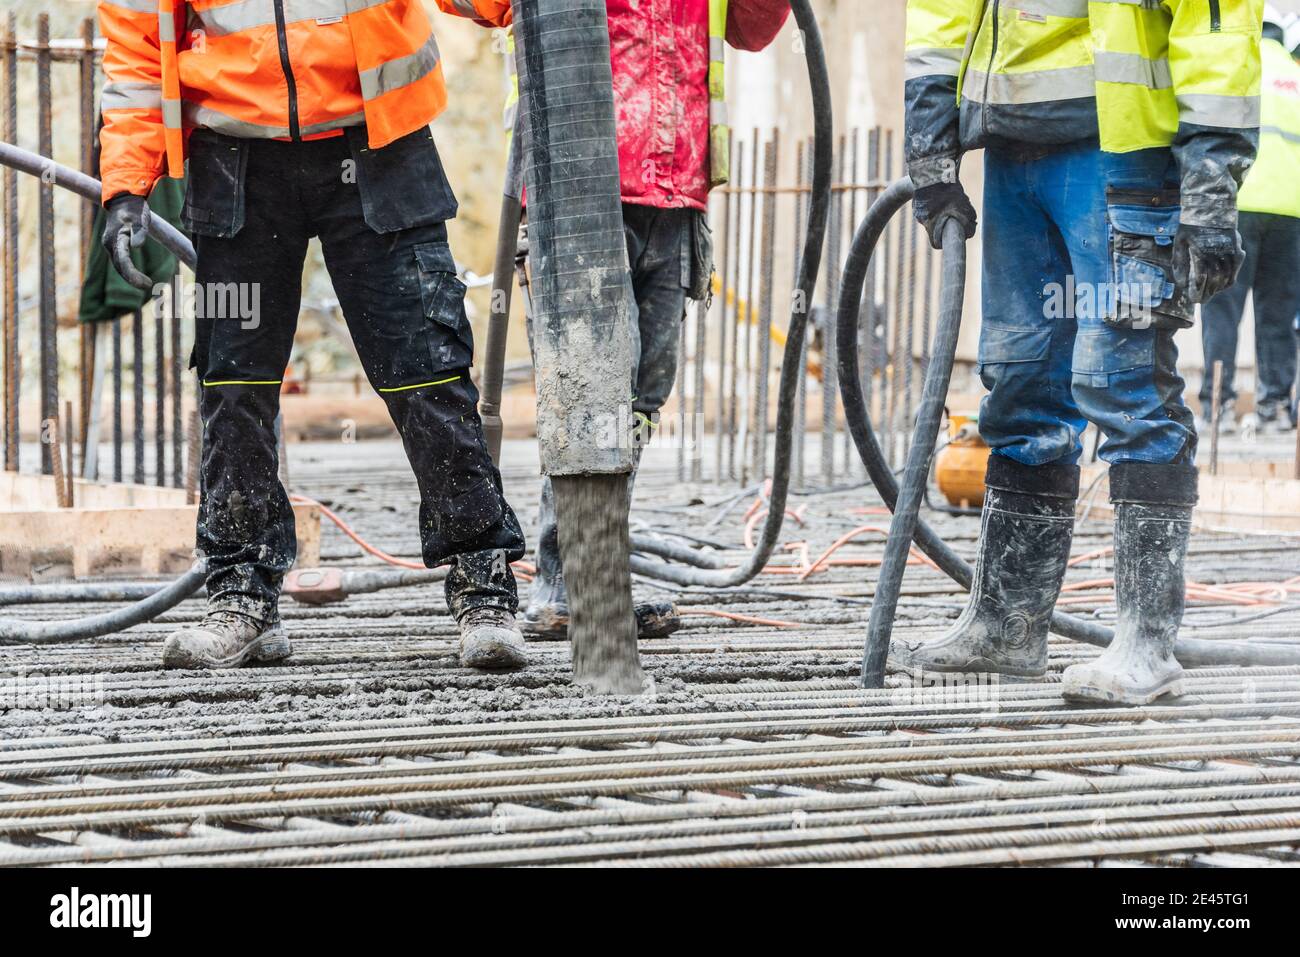 Un grupo de trabajadores de la construcción durante el trabajo de fundición de hormigón, utilizando vibrador de hormigón para compactar hormigón de consistencia rígida. Foto de stock